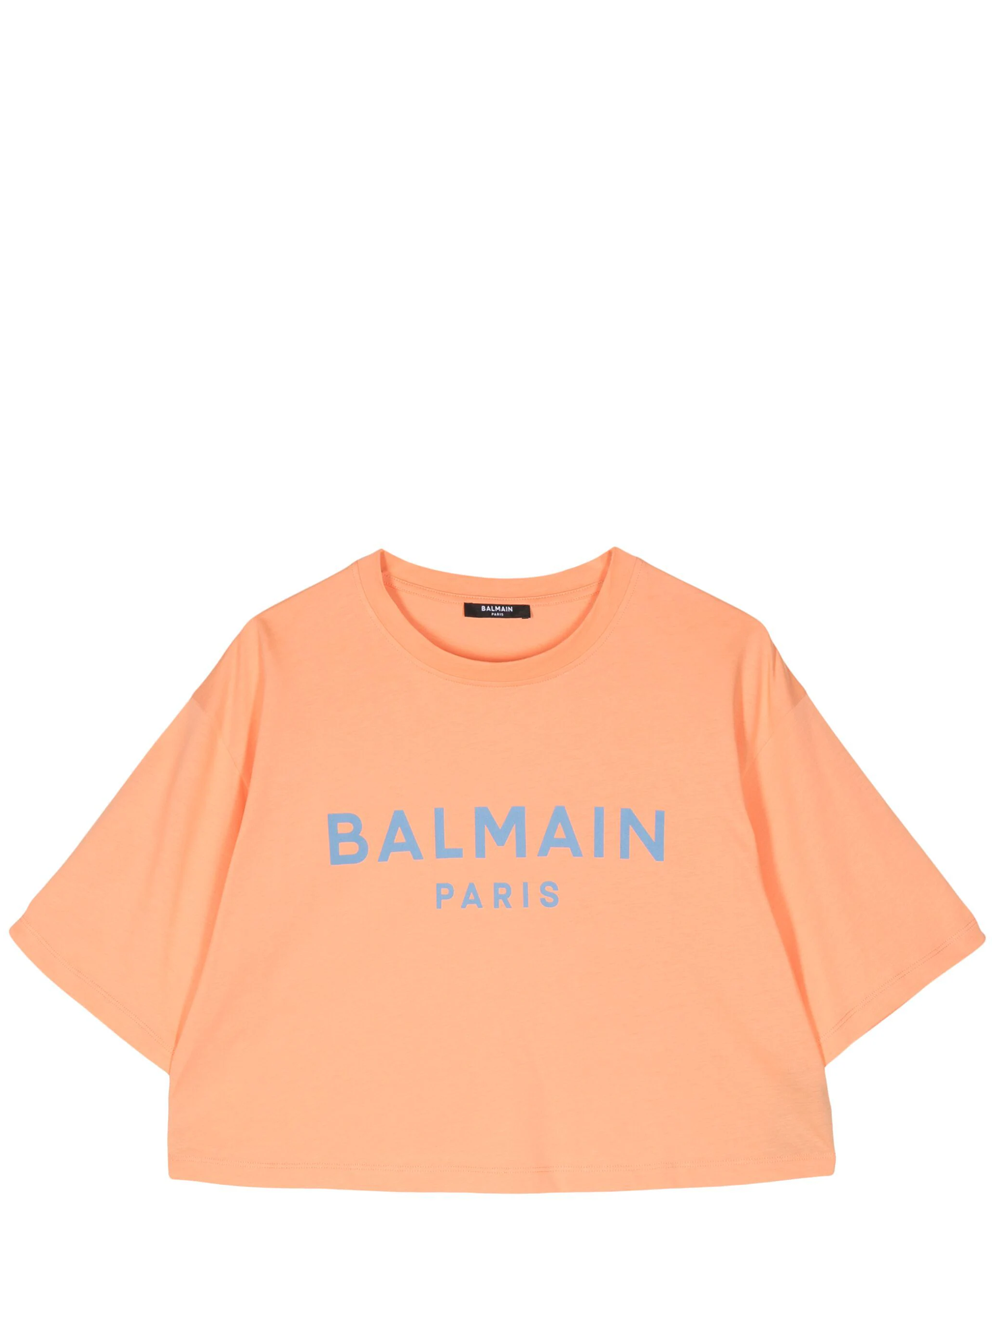 BALMAIN_PrintedCroppedT-Shirt_orange